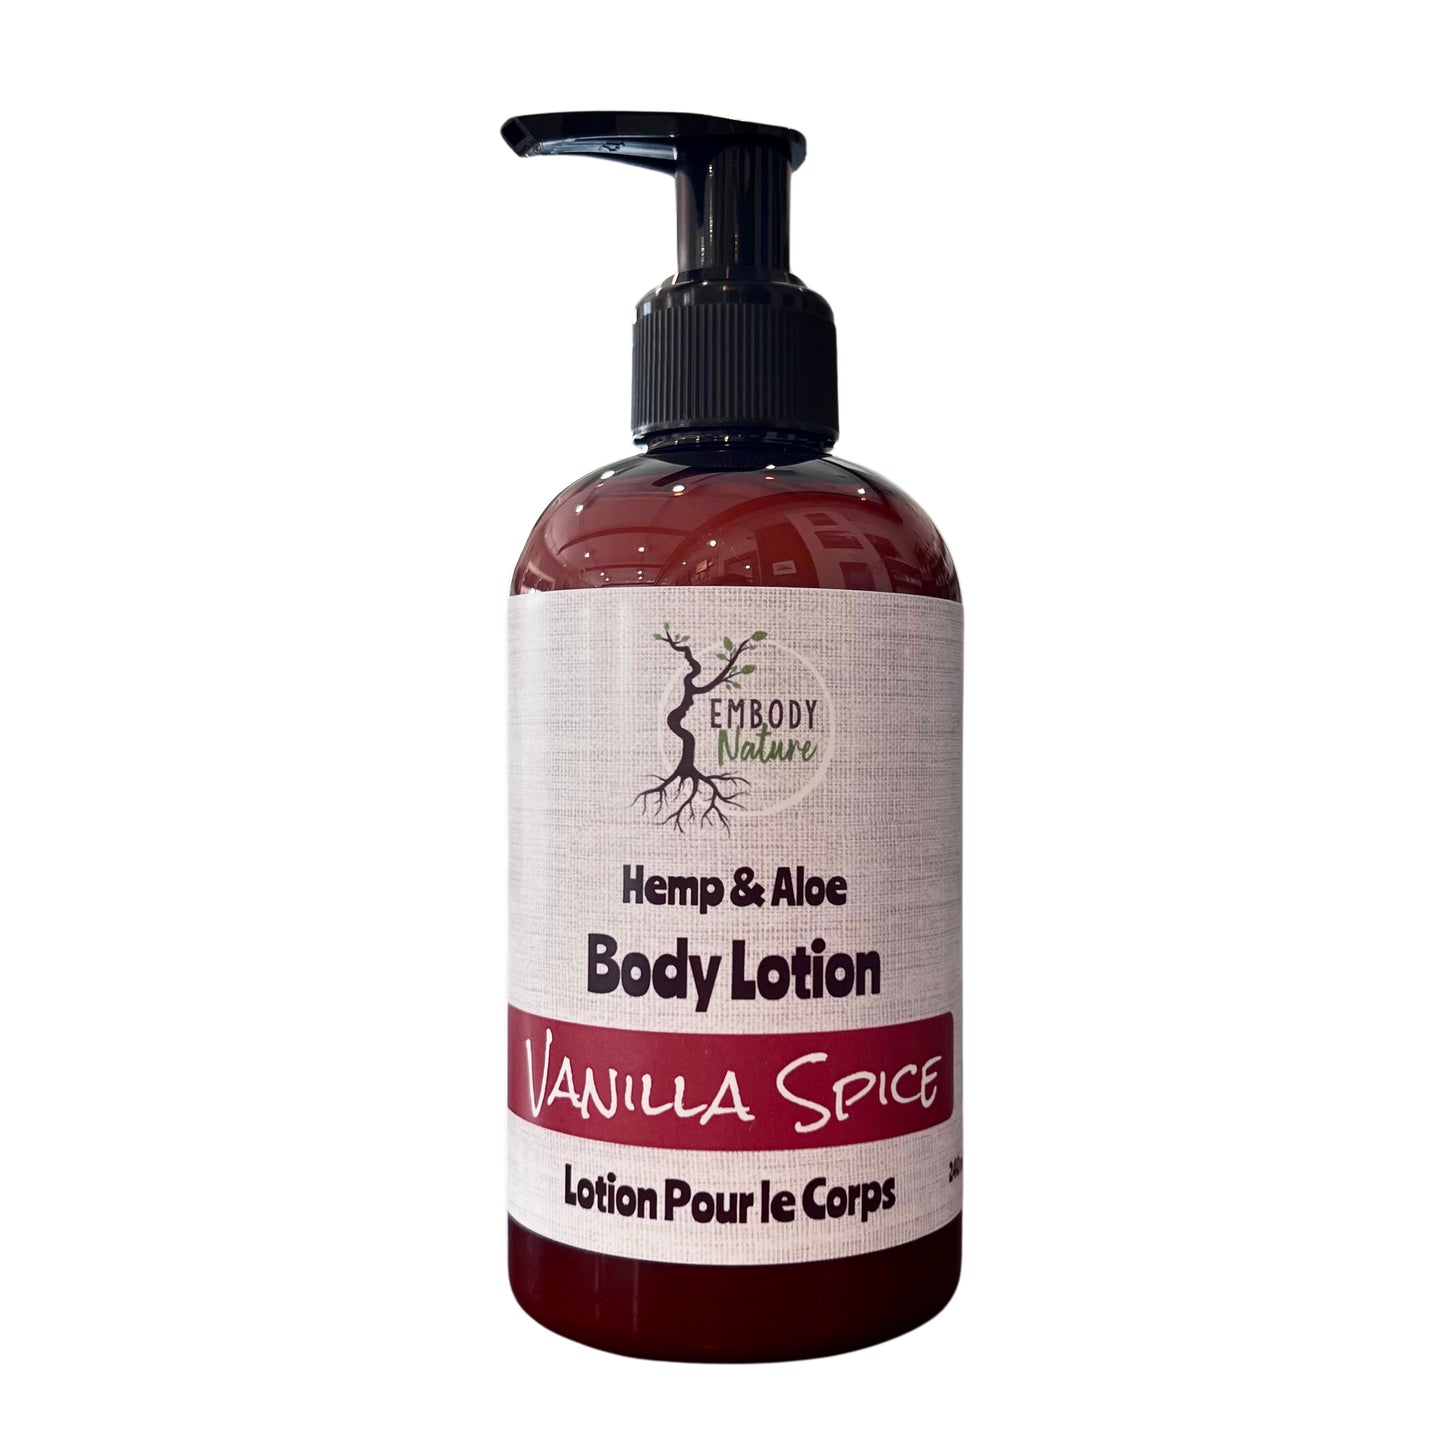 Vanilla Spice Hand & Body Lotion